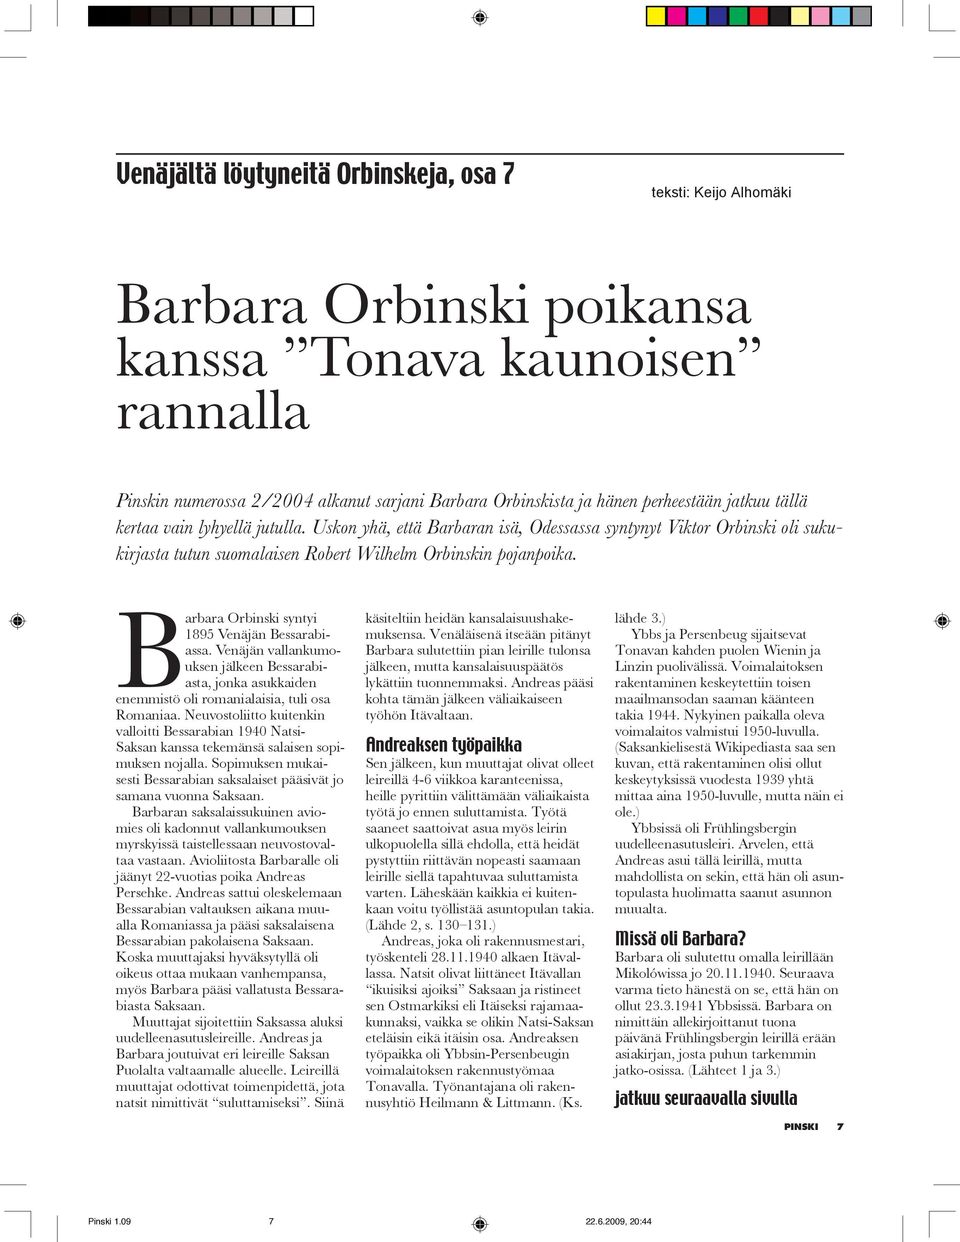 Barbara Orbinski syntyi 1895 Venäjän Bessarabiassa. Venäjän vallankumouksen jälkeen Bessarabiasta, jonka asukkaiden enemmistö oli romanialaisia, tuli osa Romaniaa.